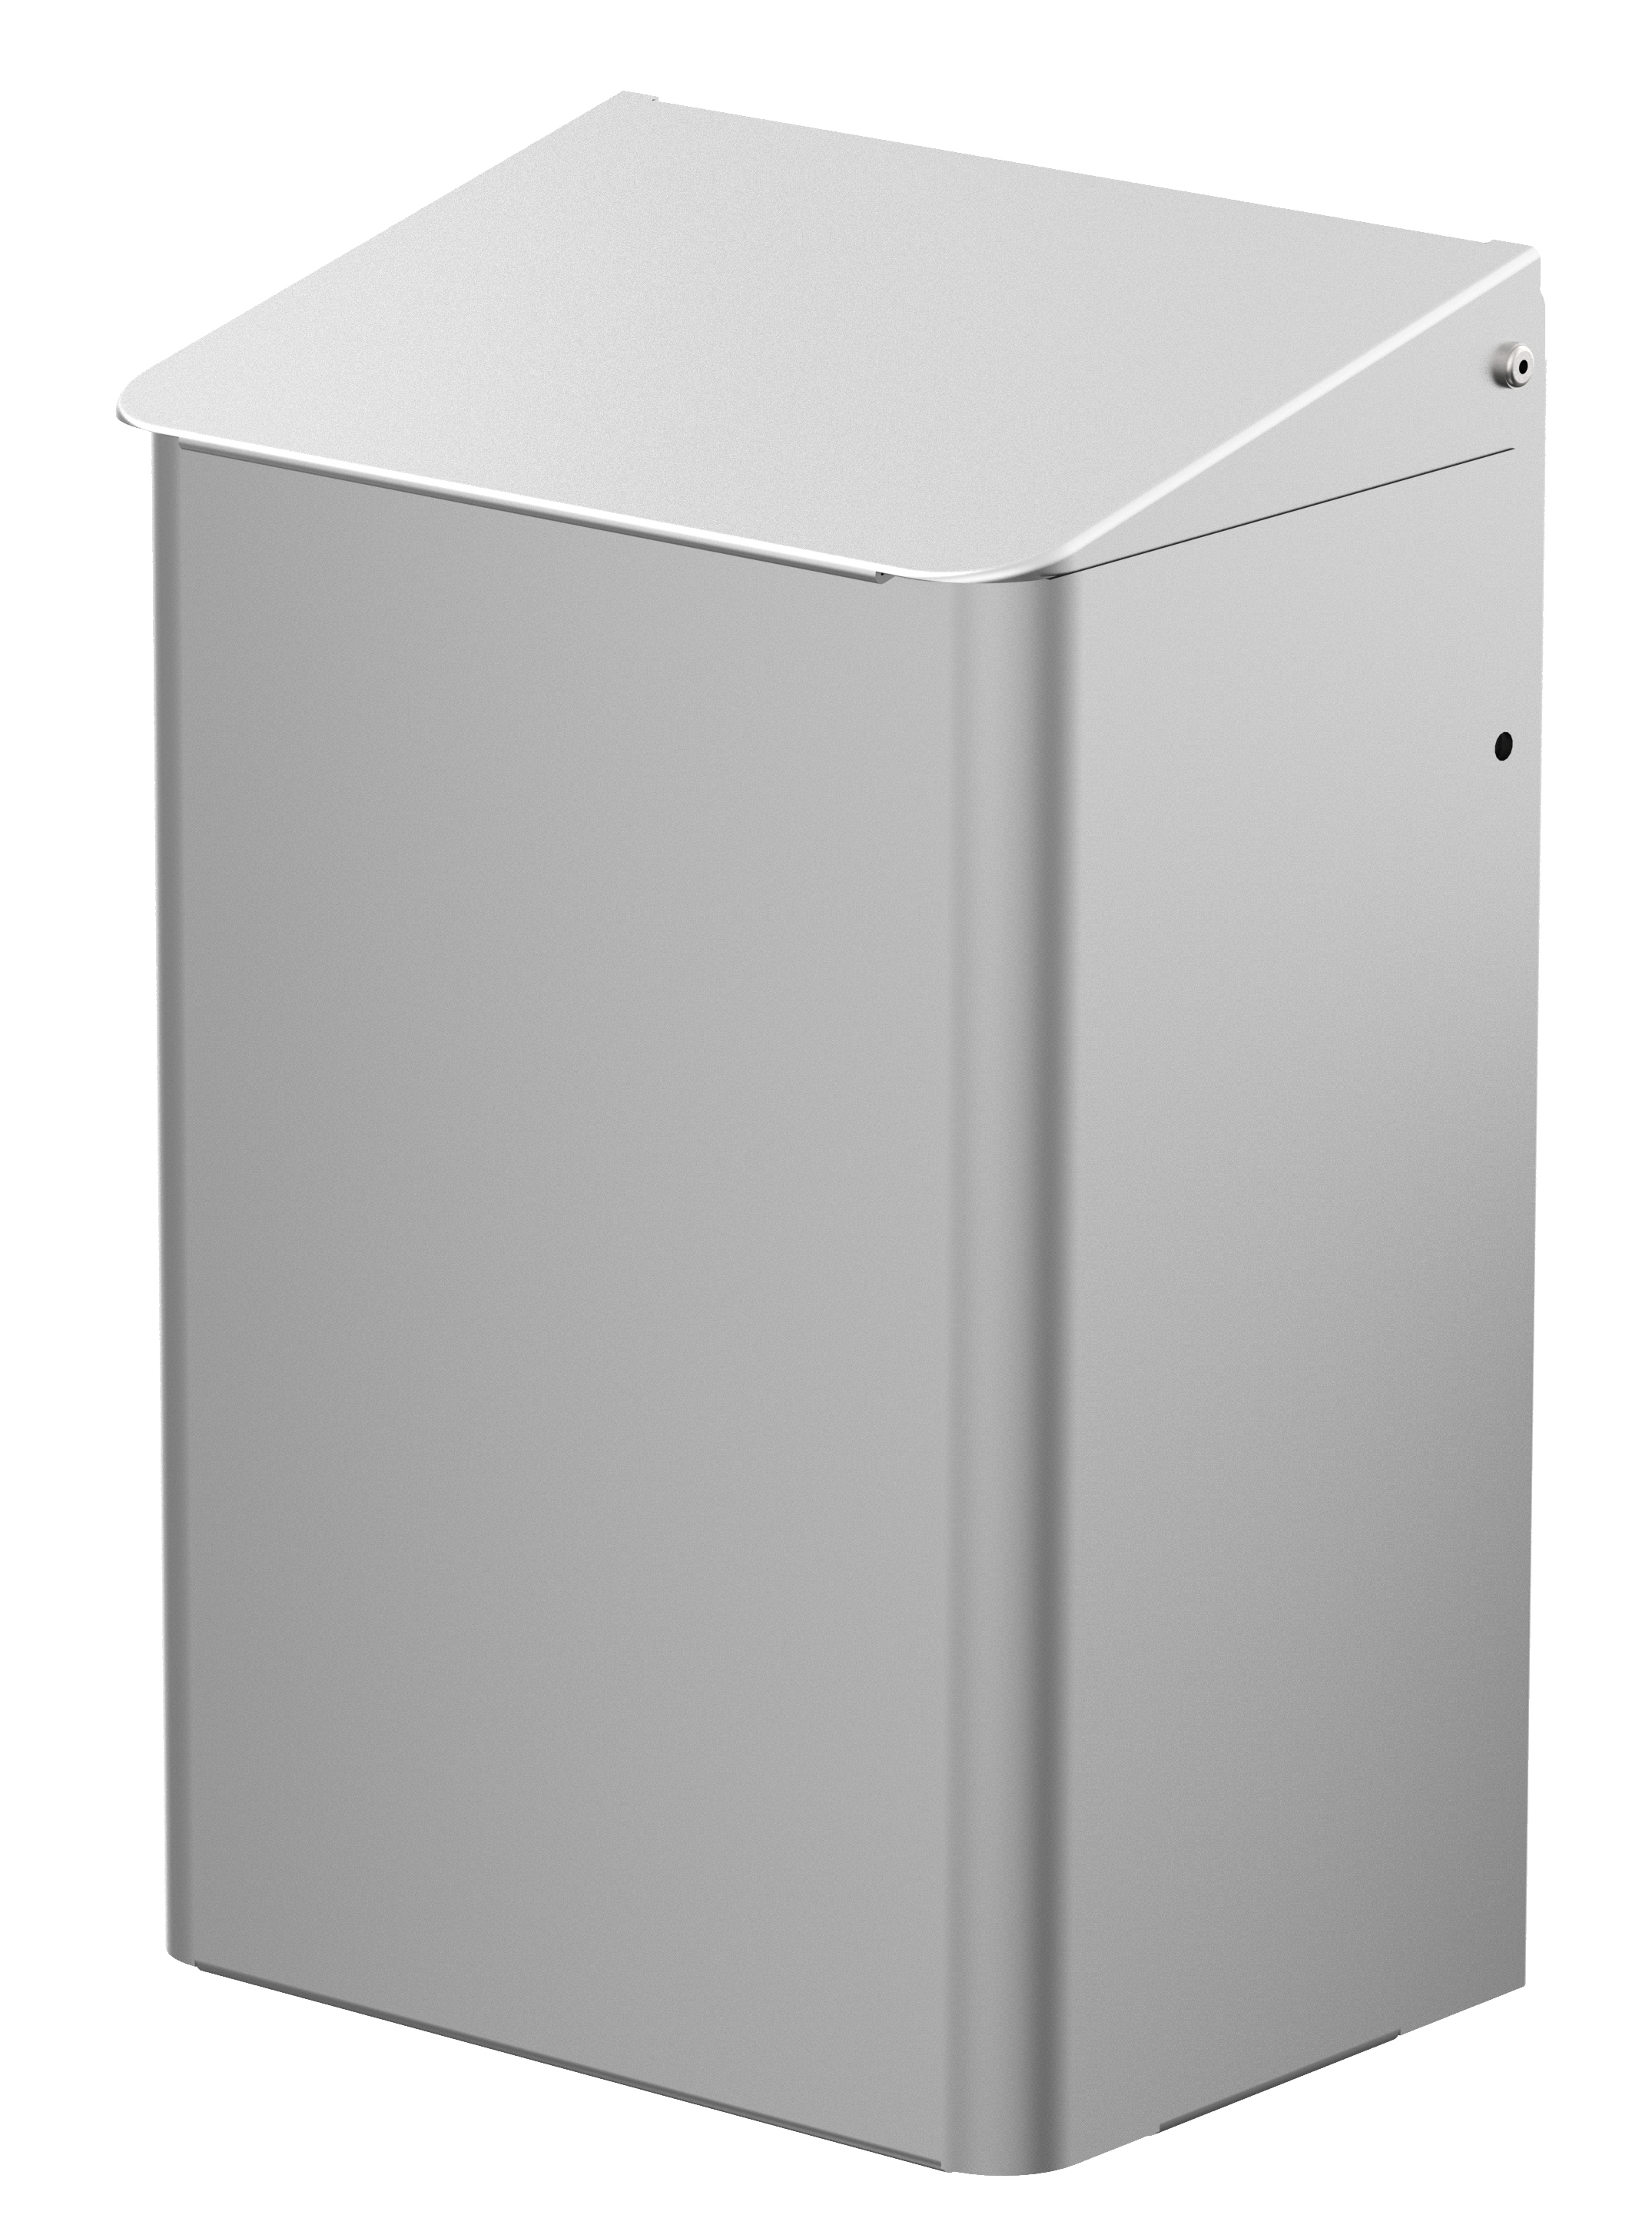 CWS MediLine Hygienebox 6 Liter alu-eloxiert/ Alu-weiß/ Edelstahl